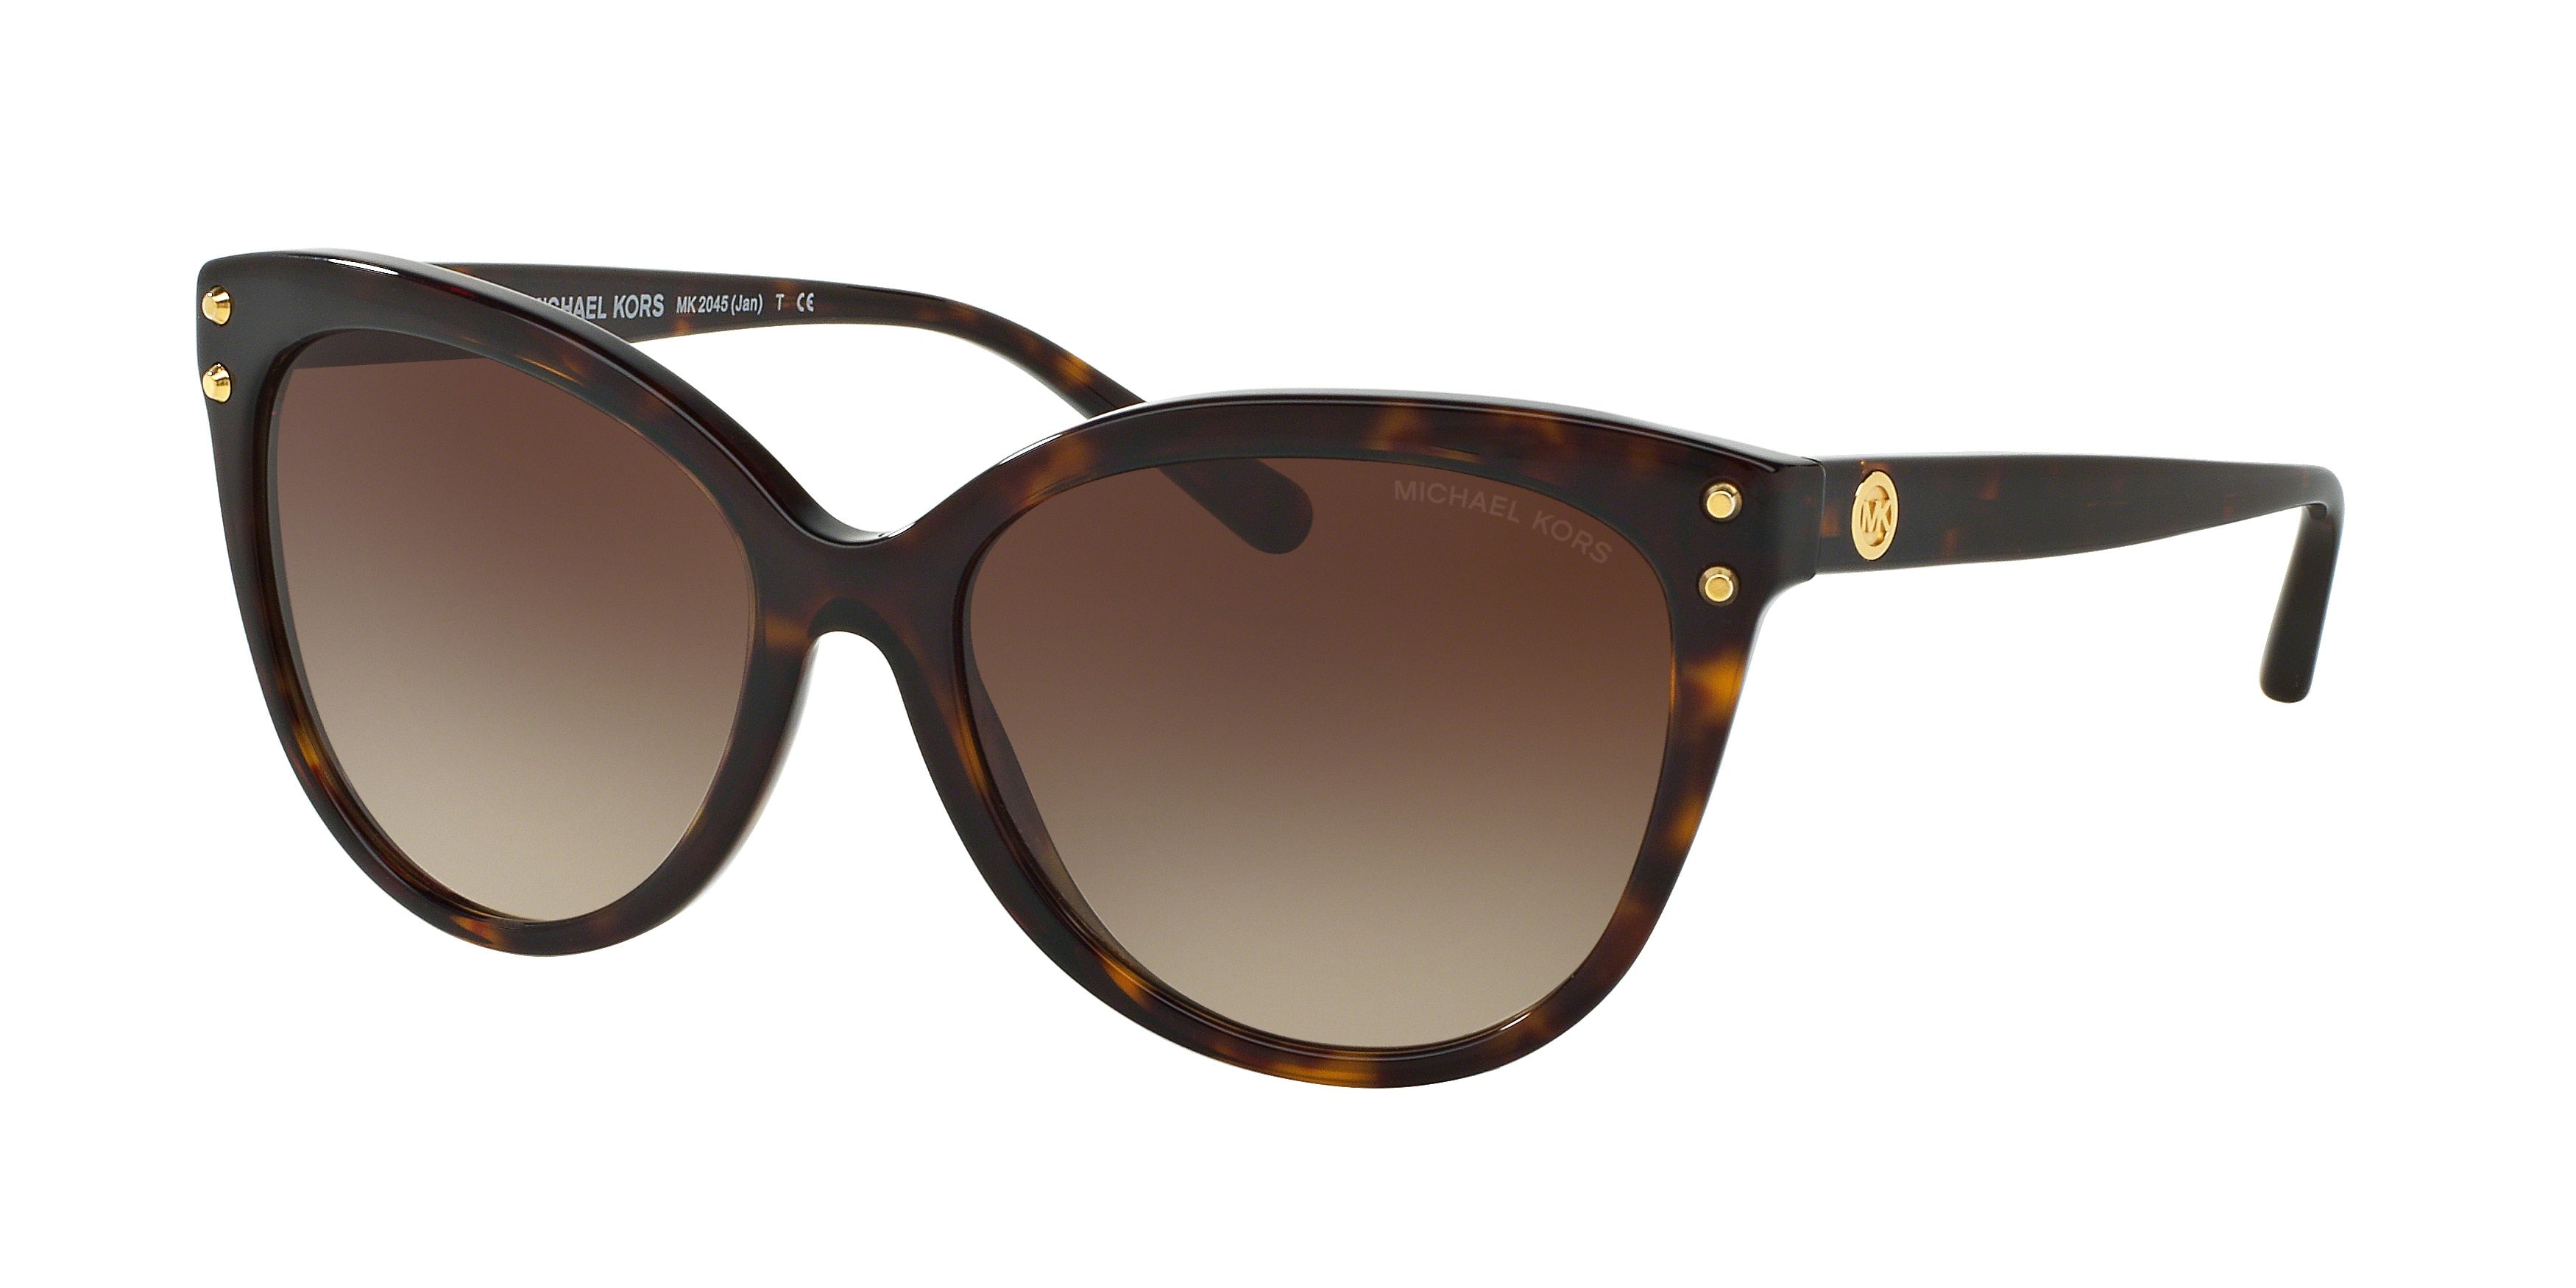 Michael Kors JAN MK2045 Cat Eye Sunglasses  300613-Dark Tortoise 55-140-16 - Color Map Tortoise